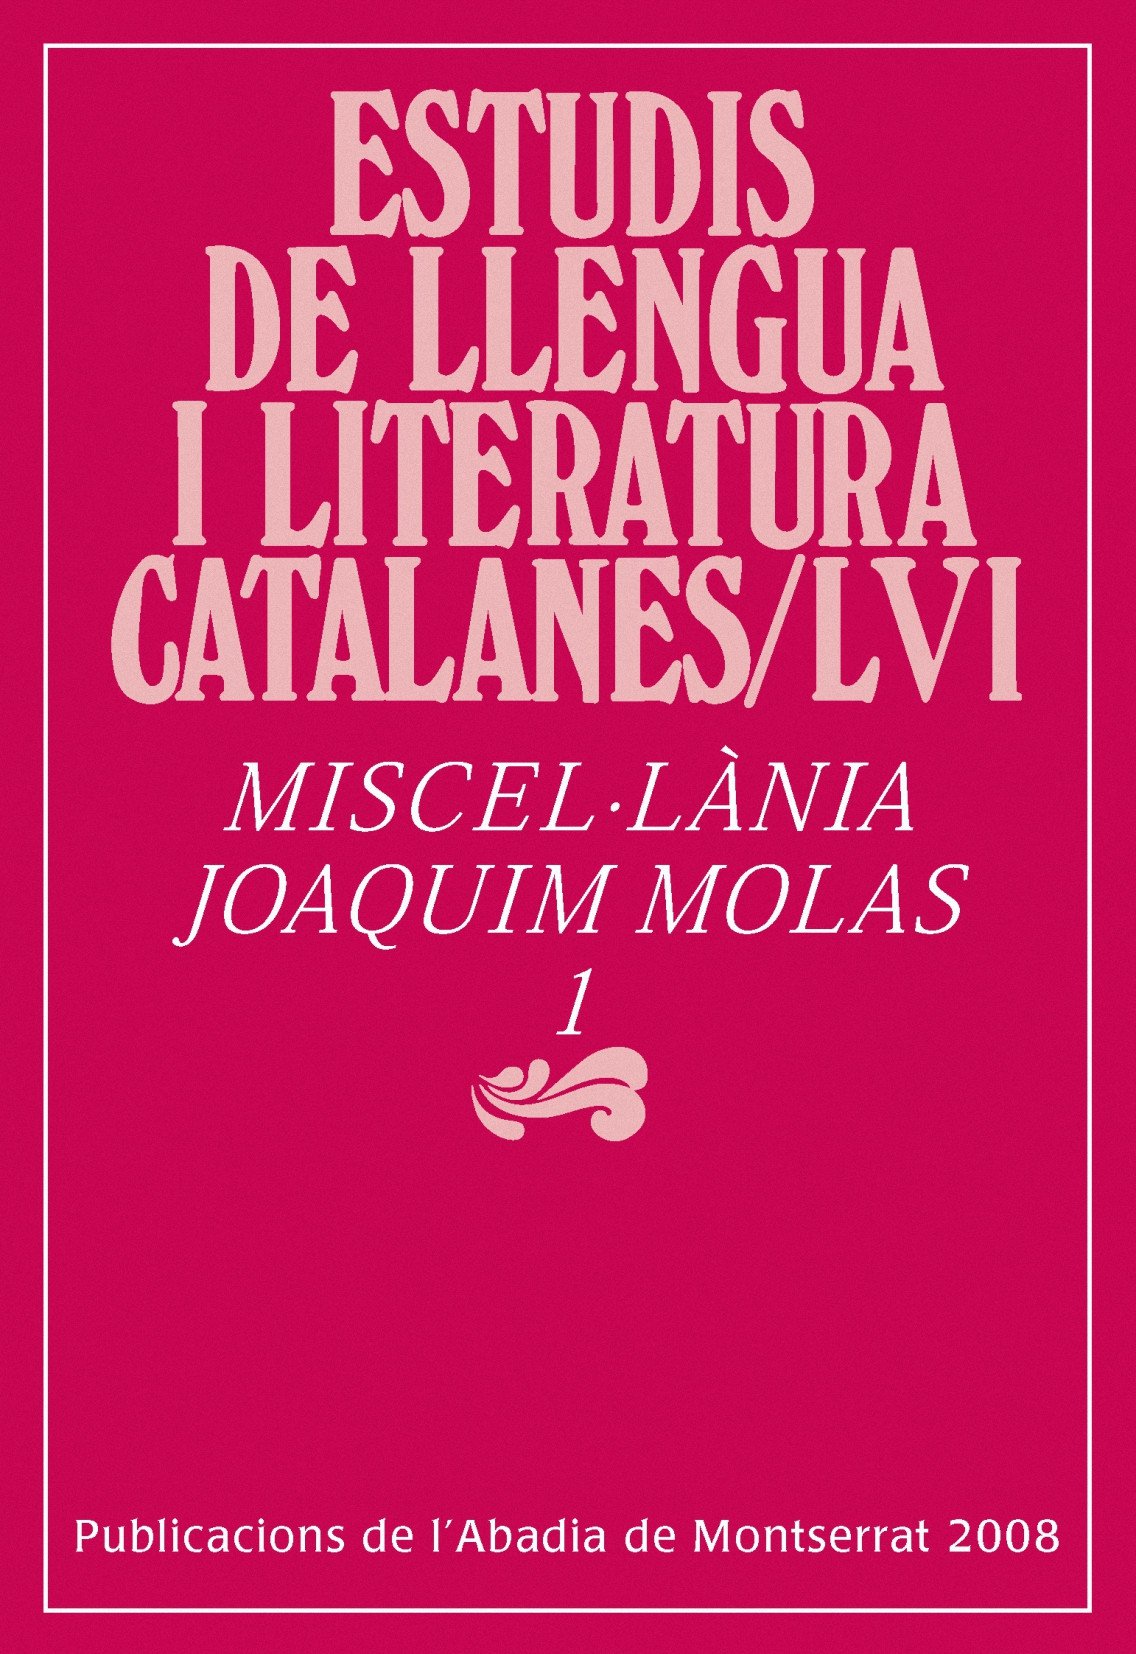 Imagen de portada del libro Miscel·lània Joaquim Molas